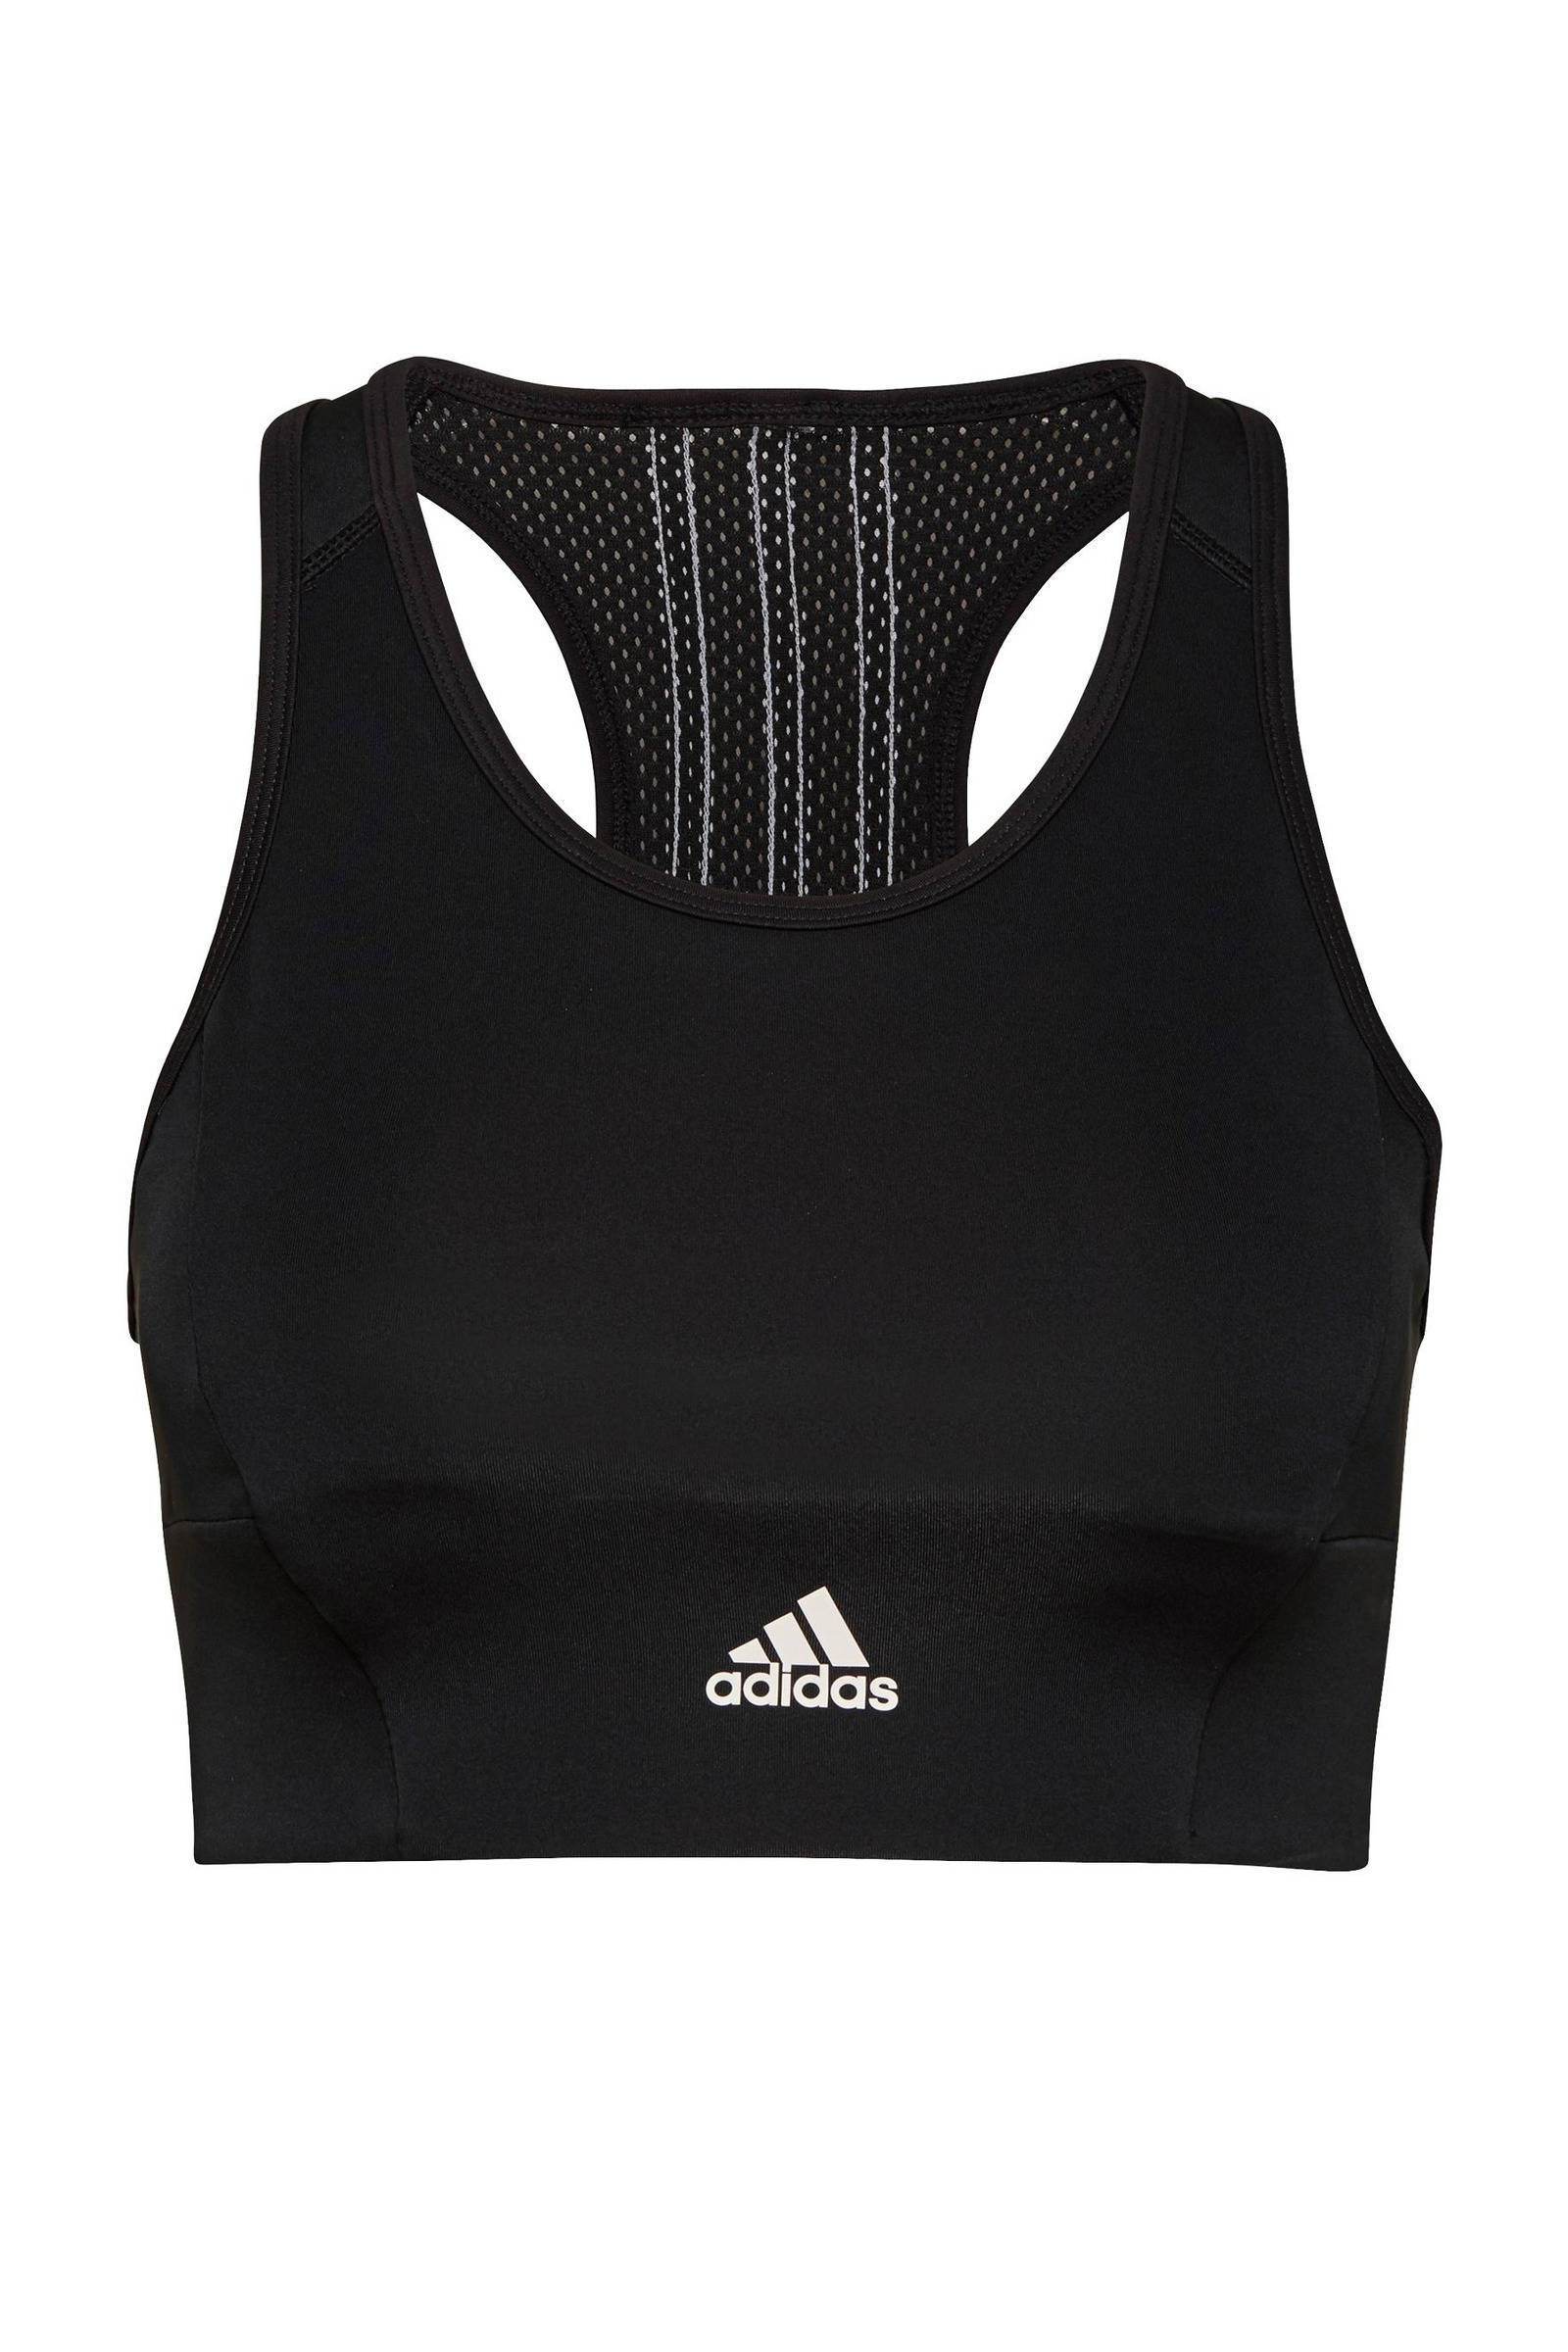 Adidas Performance cropped sporttop zwart/wit online kopen